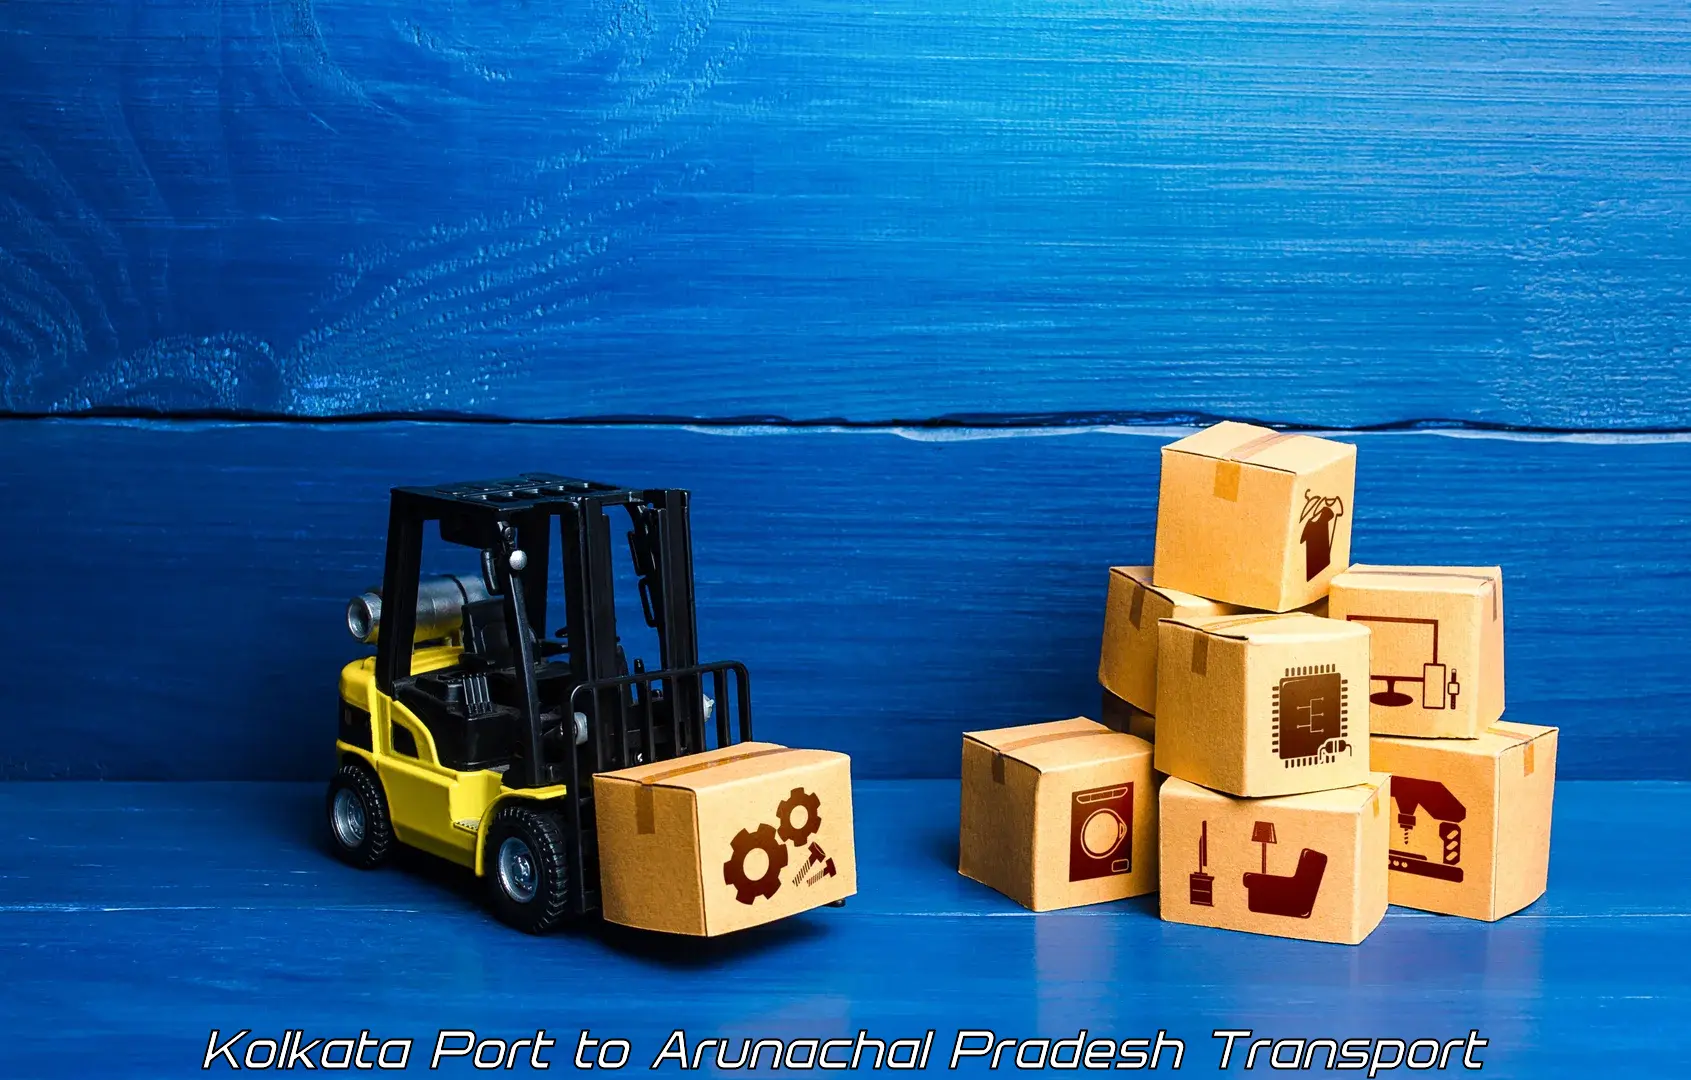 Transport in sharing Kolkata Port to Tezu